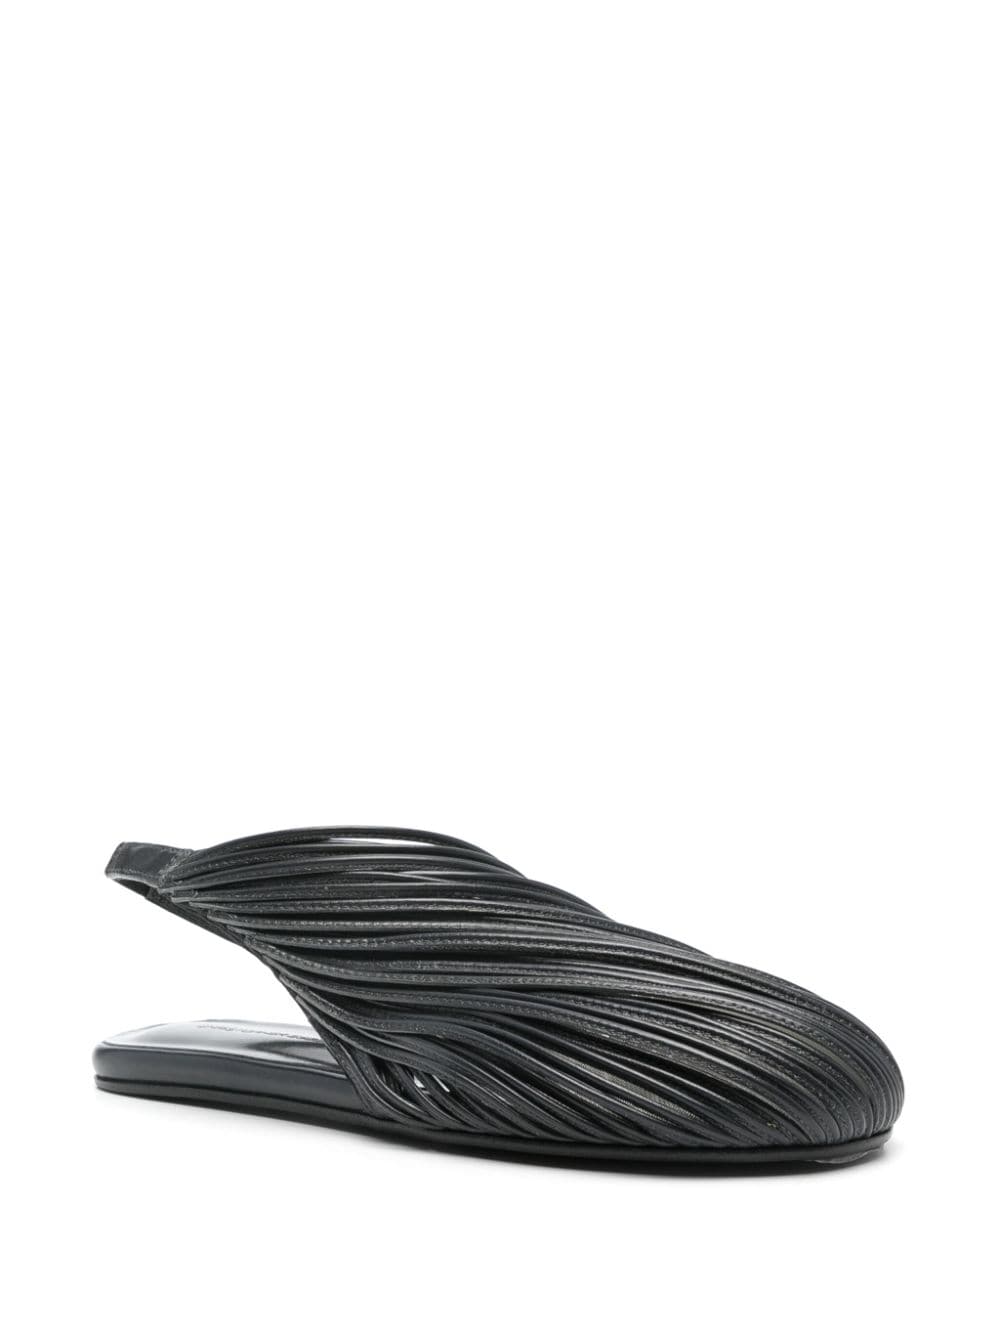 Christopher Esber Saskia strand-design leather slippers - Grijs